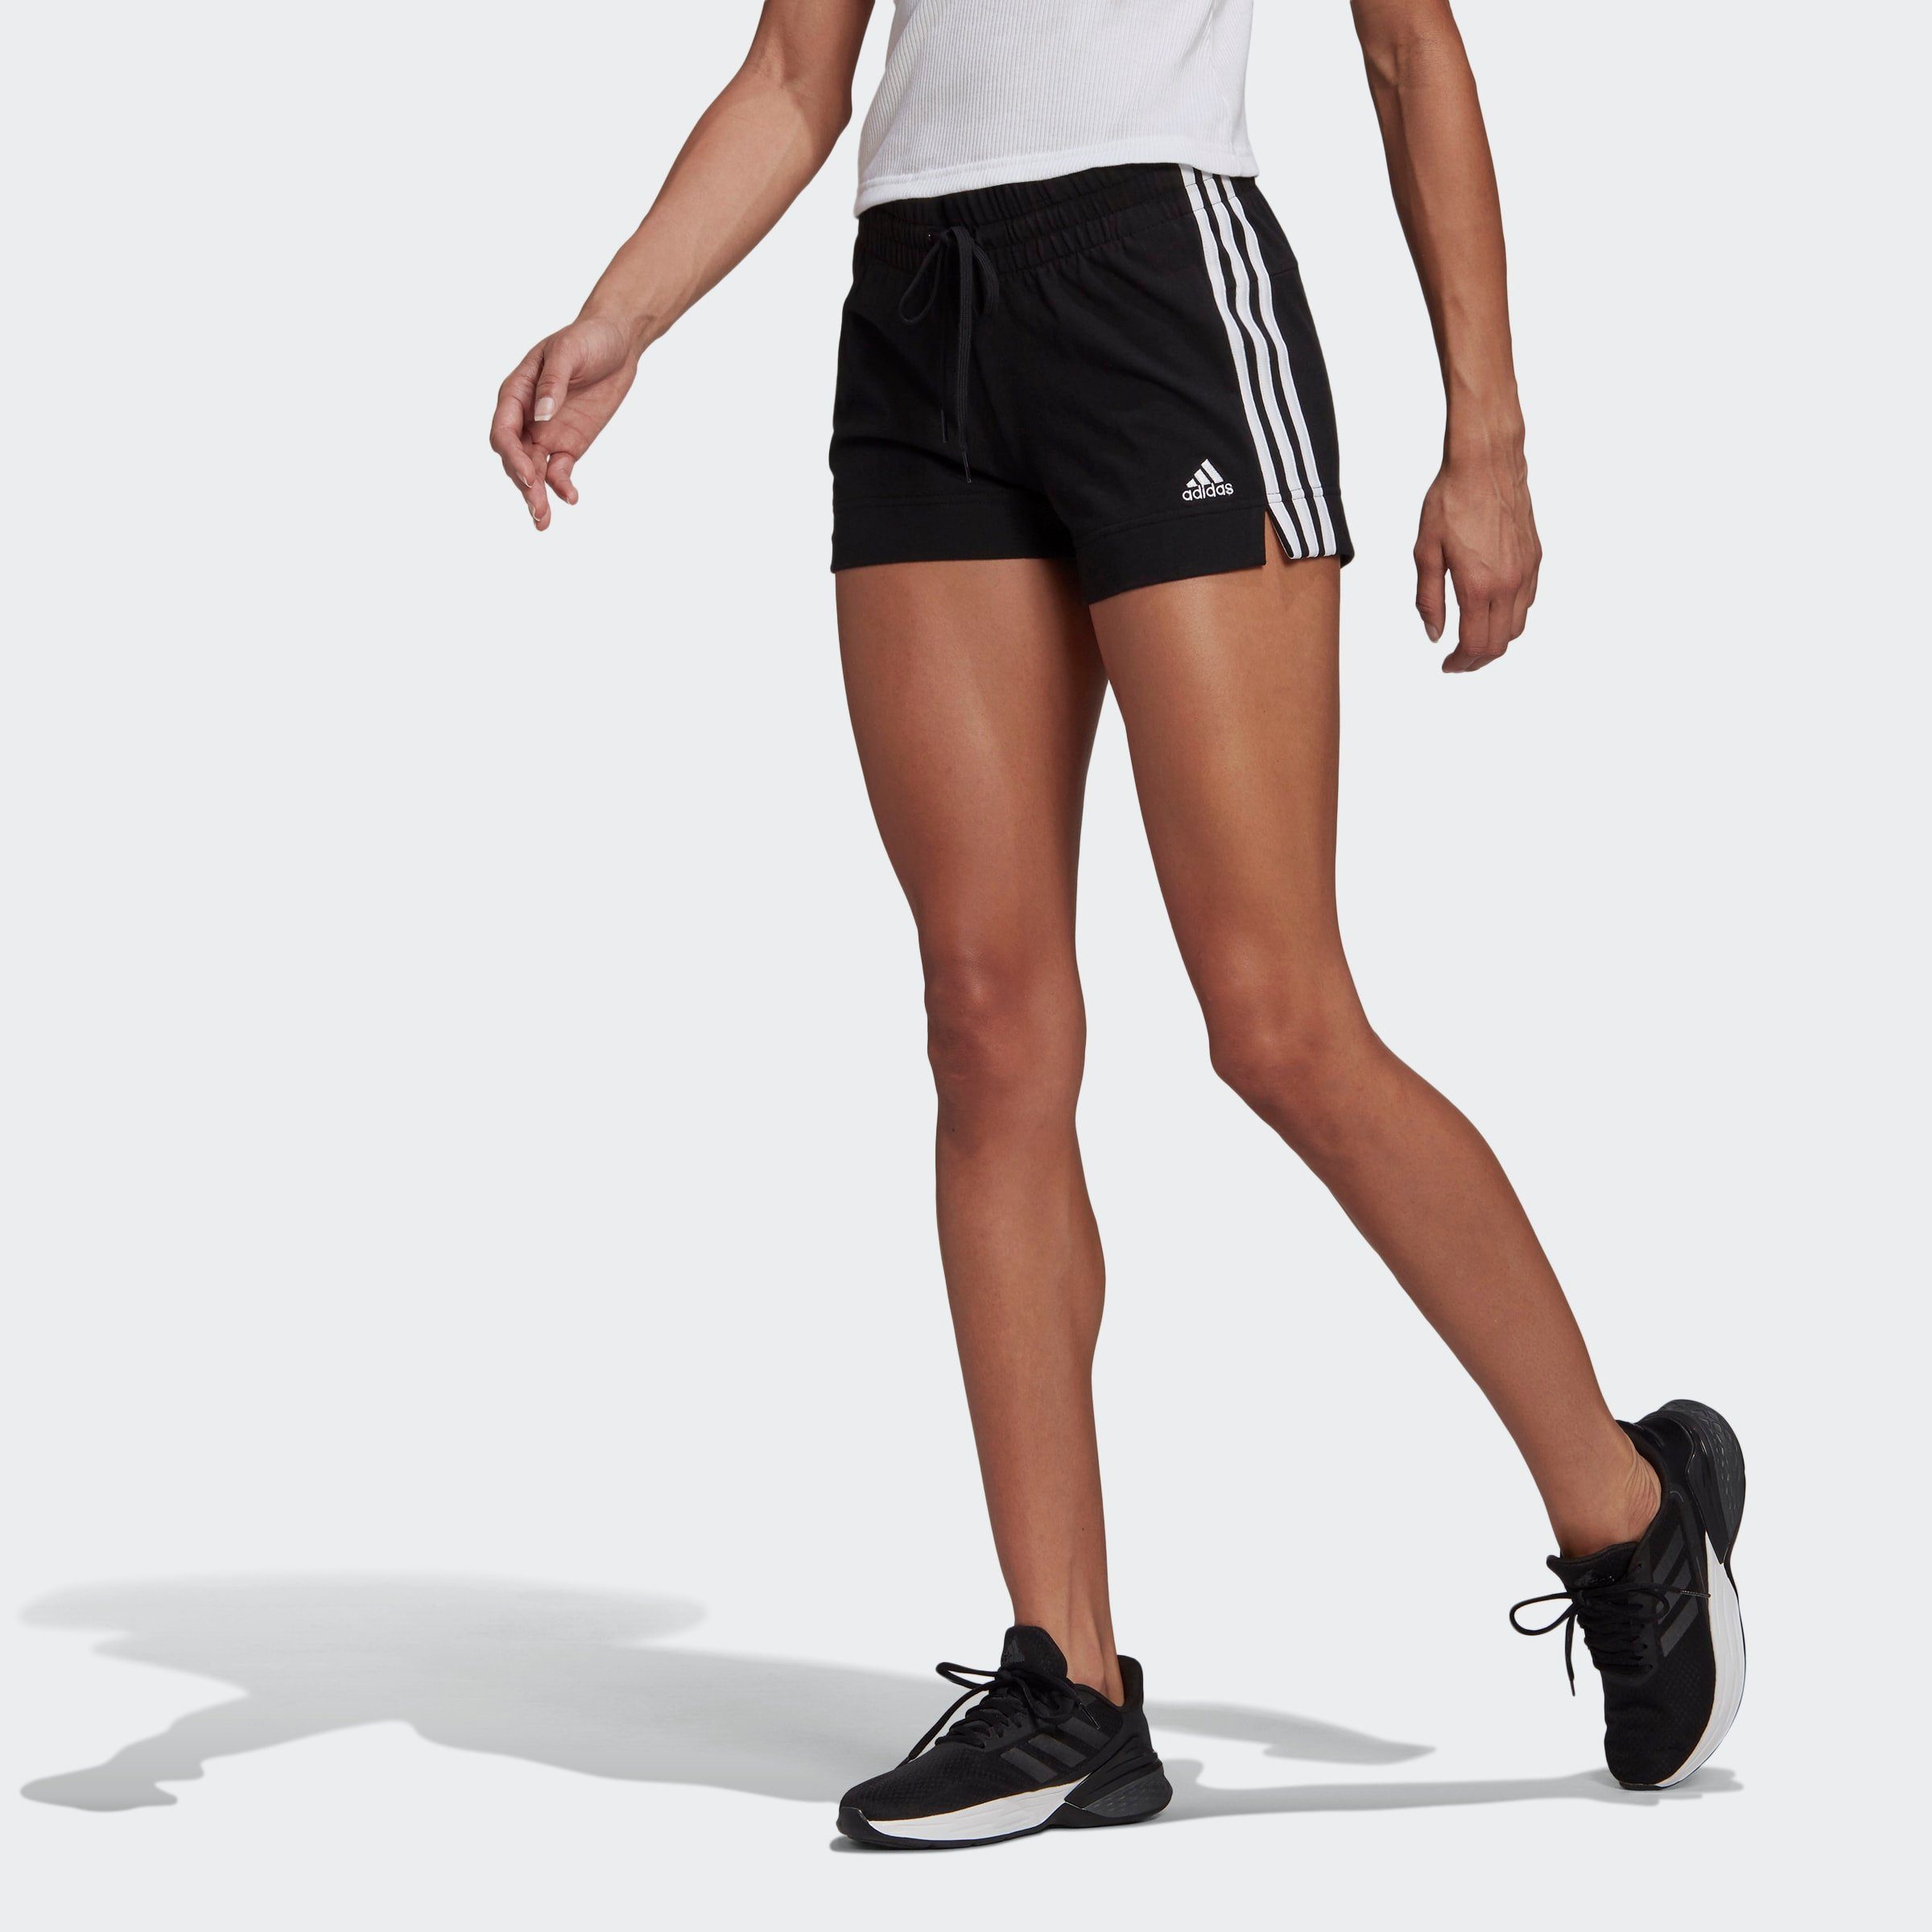 Damen-Shorts online kaufen | OTTO